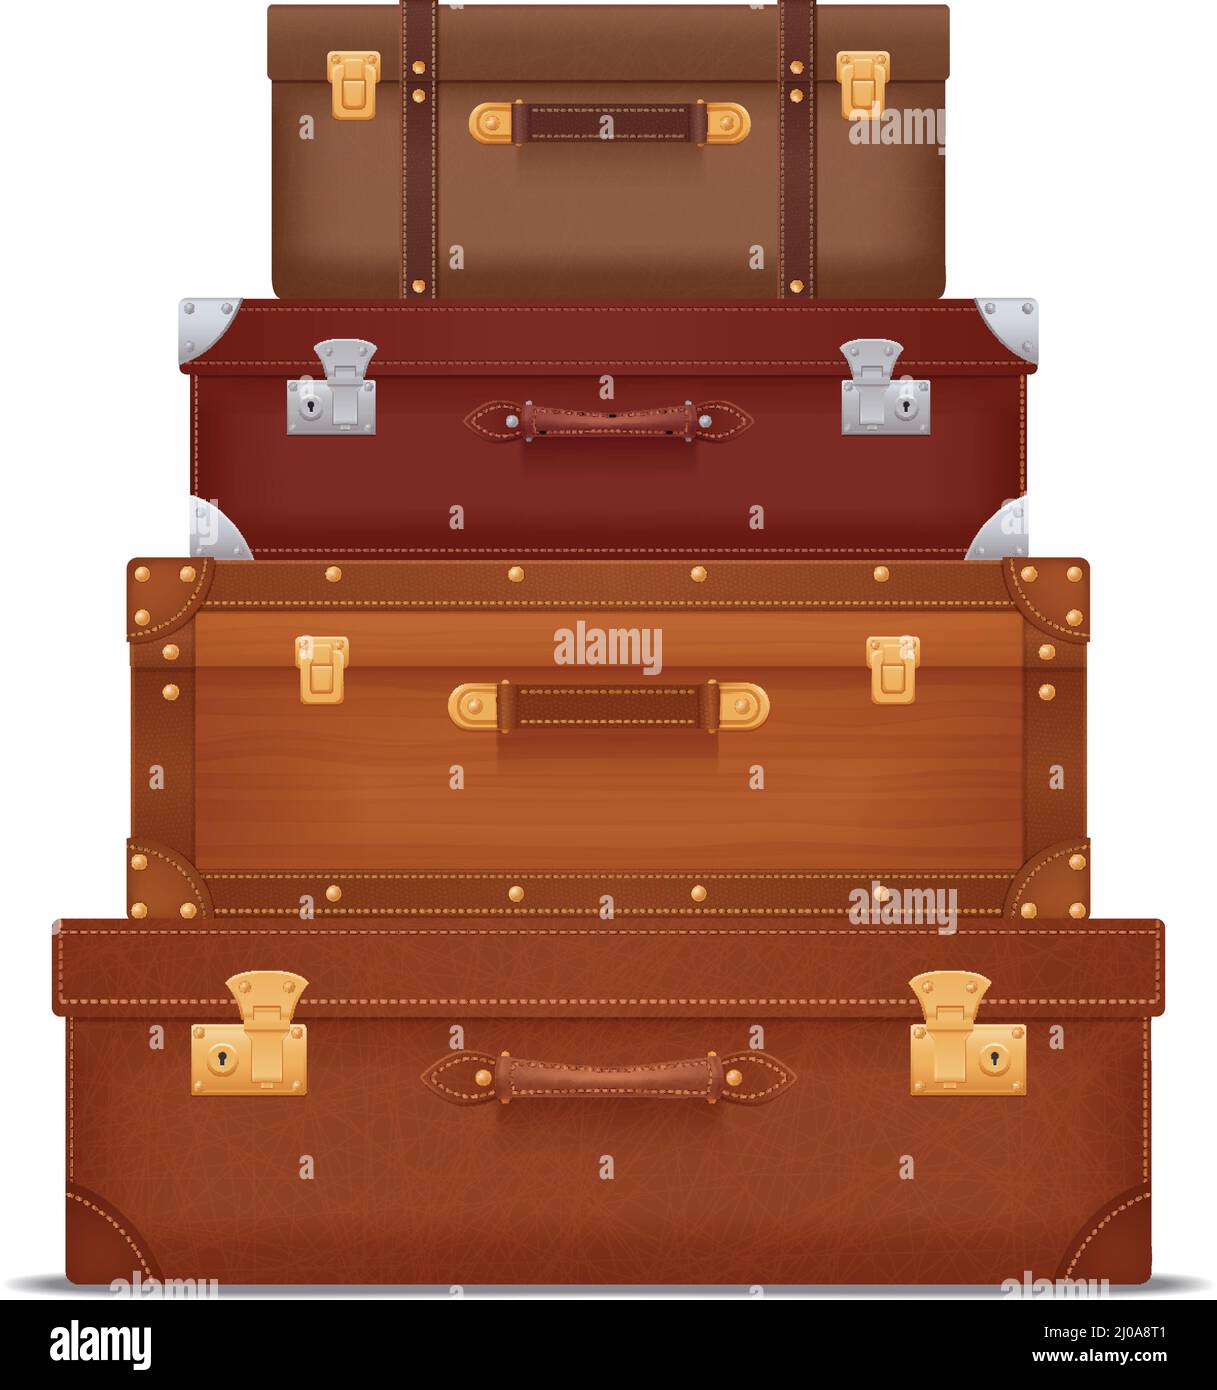 Realistische Zusammensetzung, die Stapel von Vintage-Koffer und Koffer mit Verschlüsse und Metallecken Vektorgrafik Stock Vektor